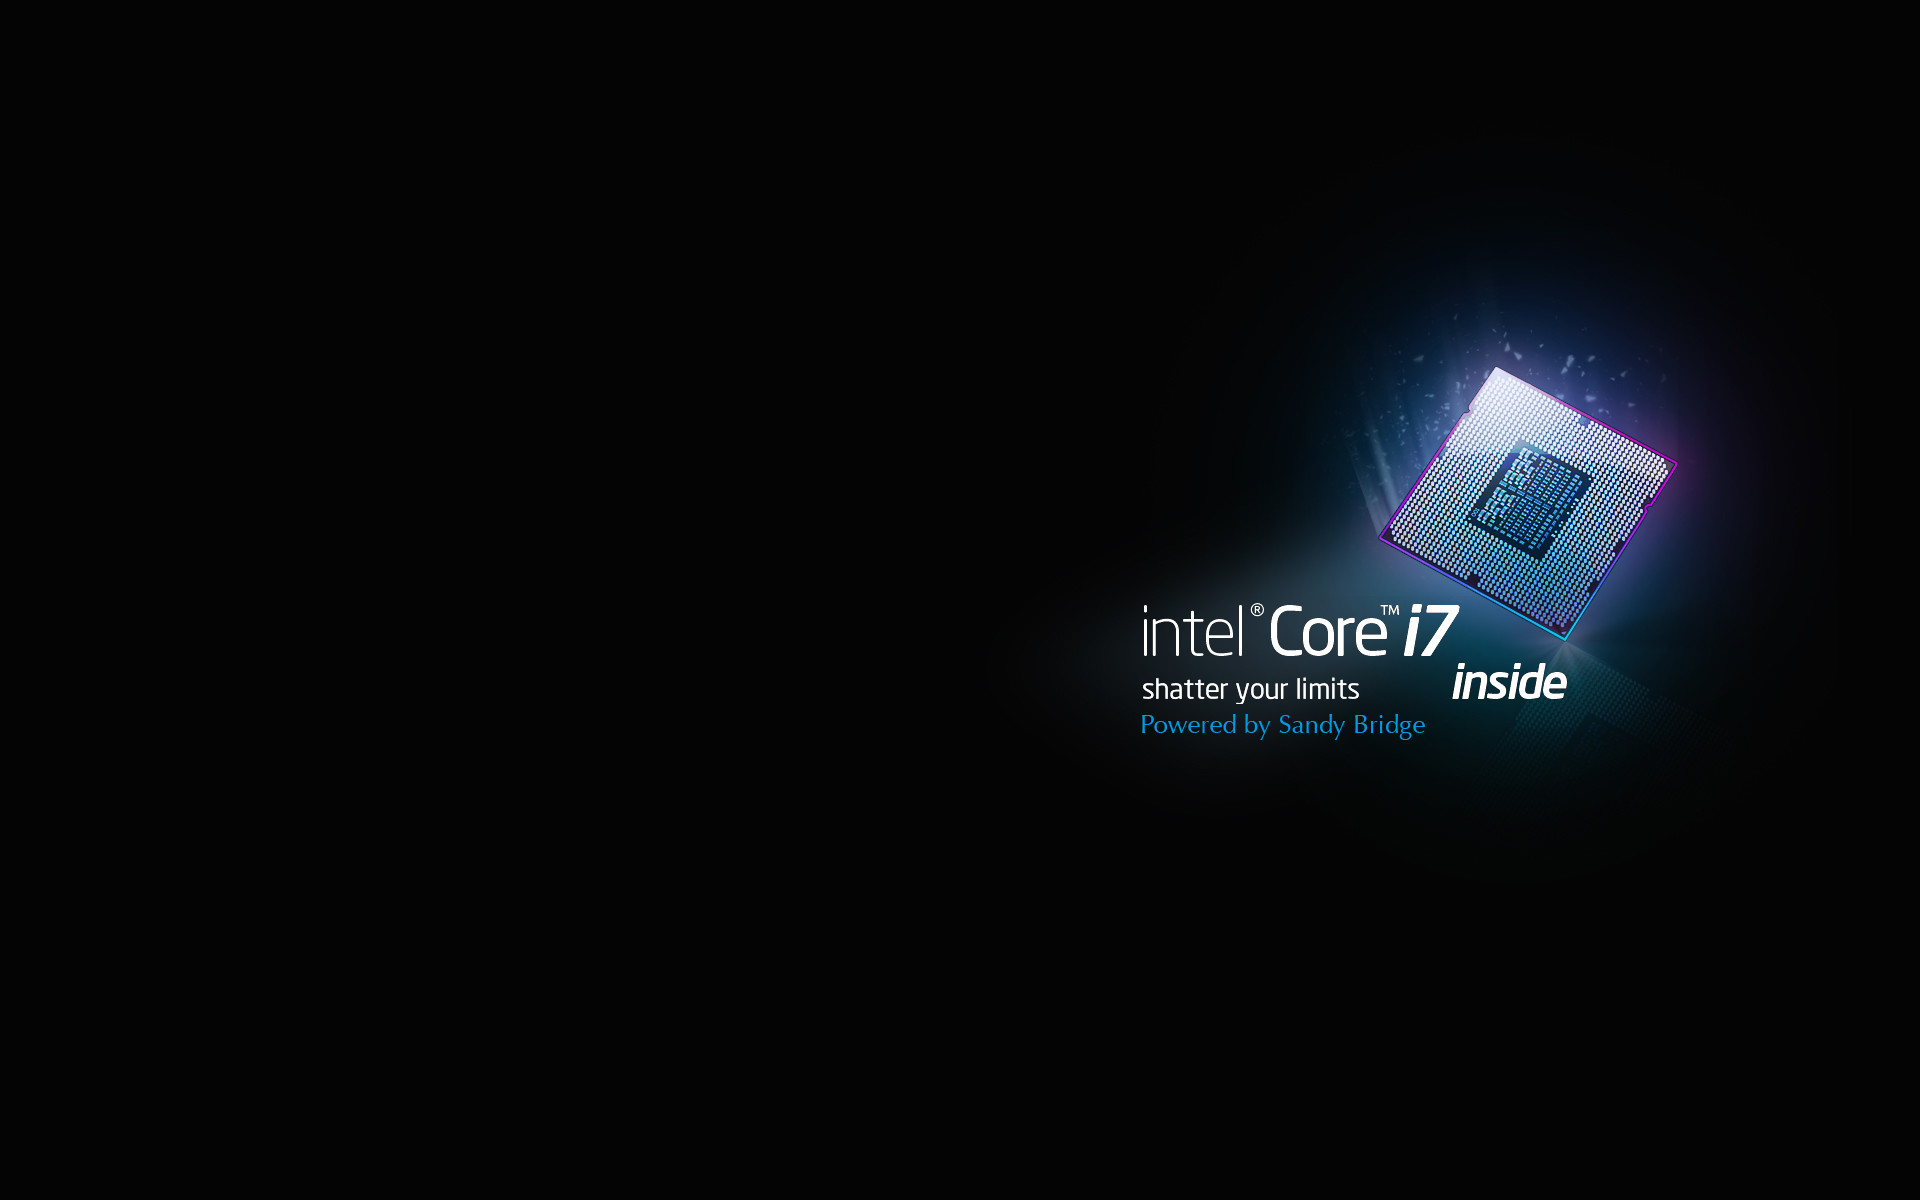 Intel I7 Wallpaper Hd 77 Images